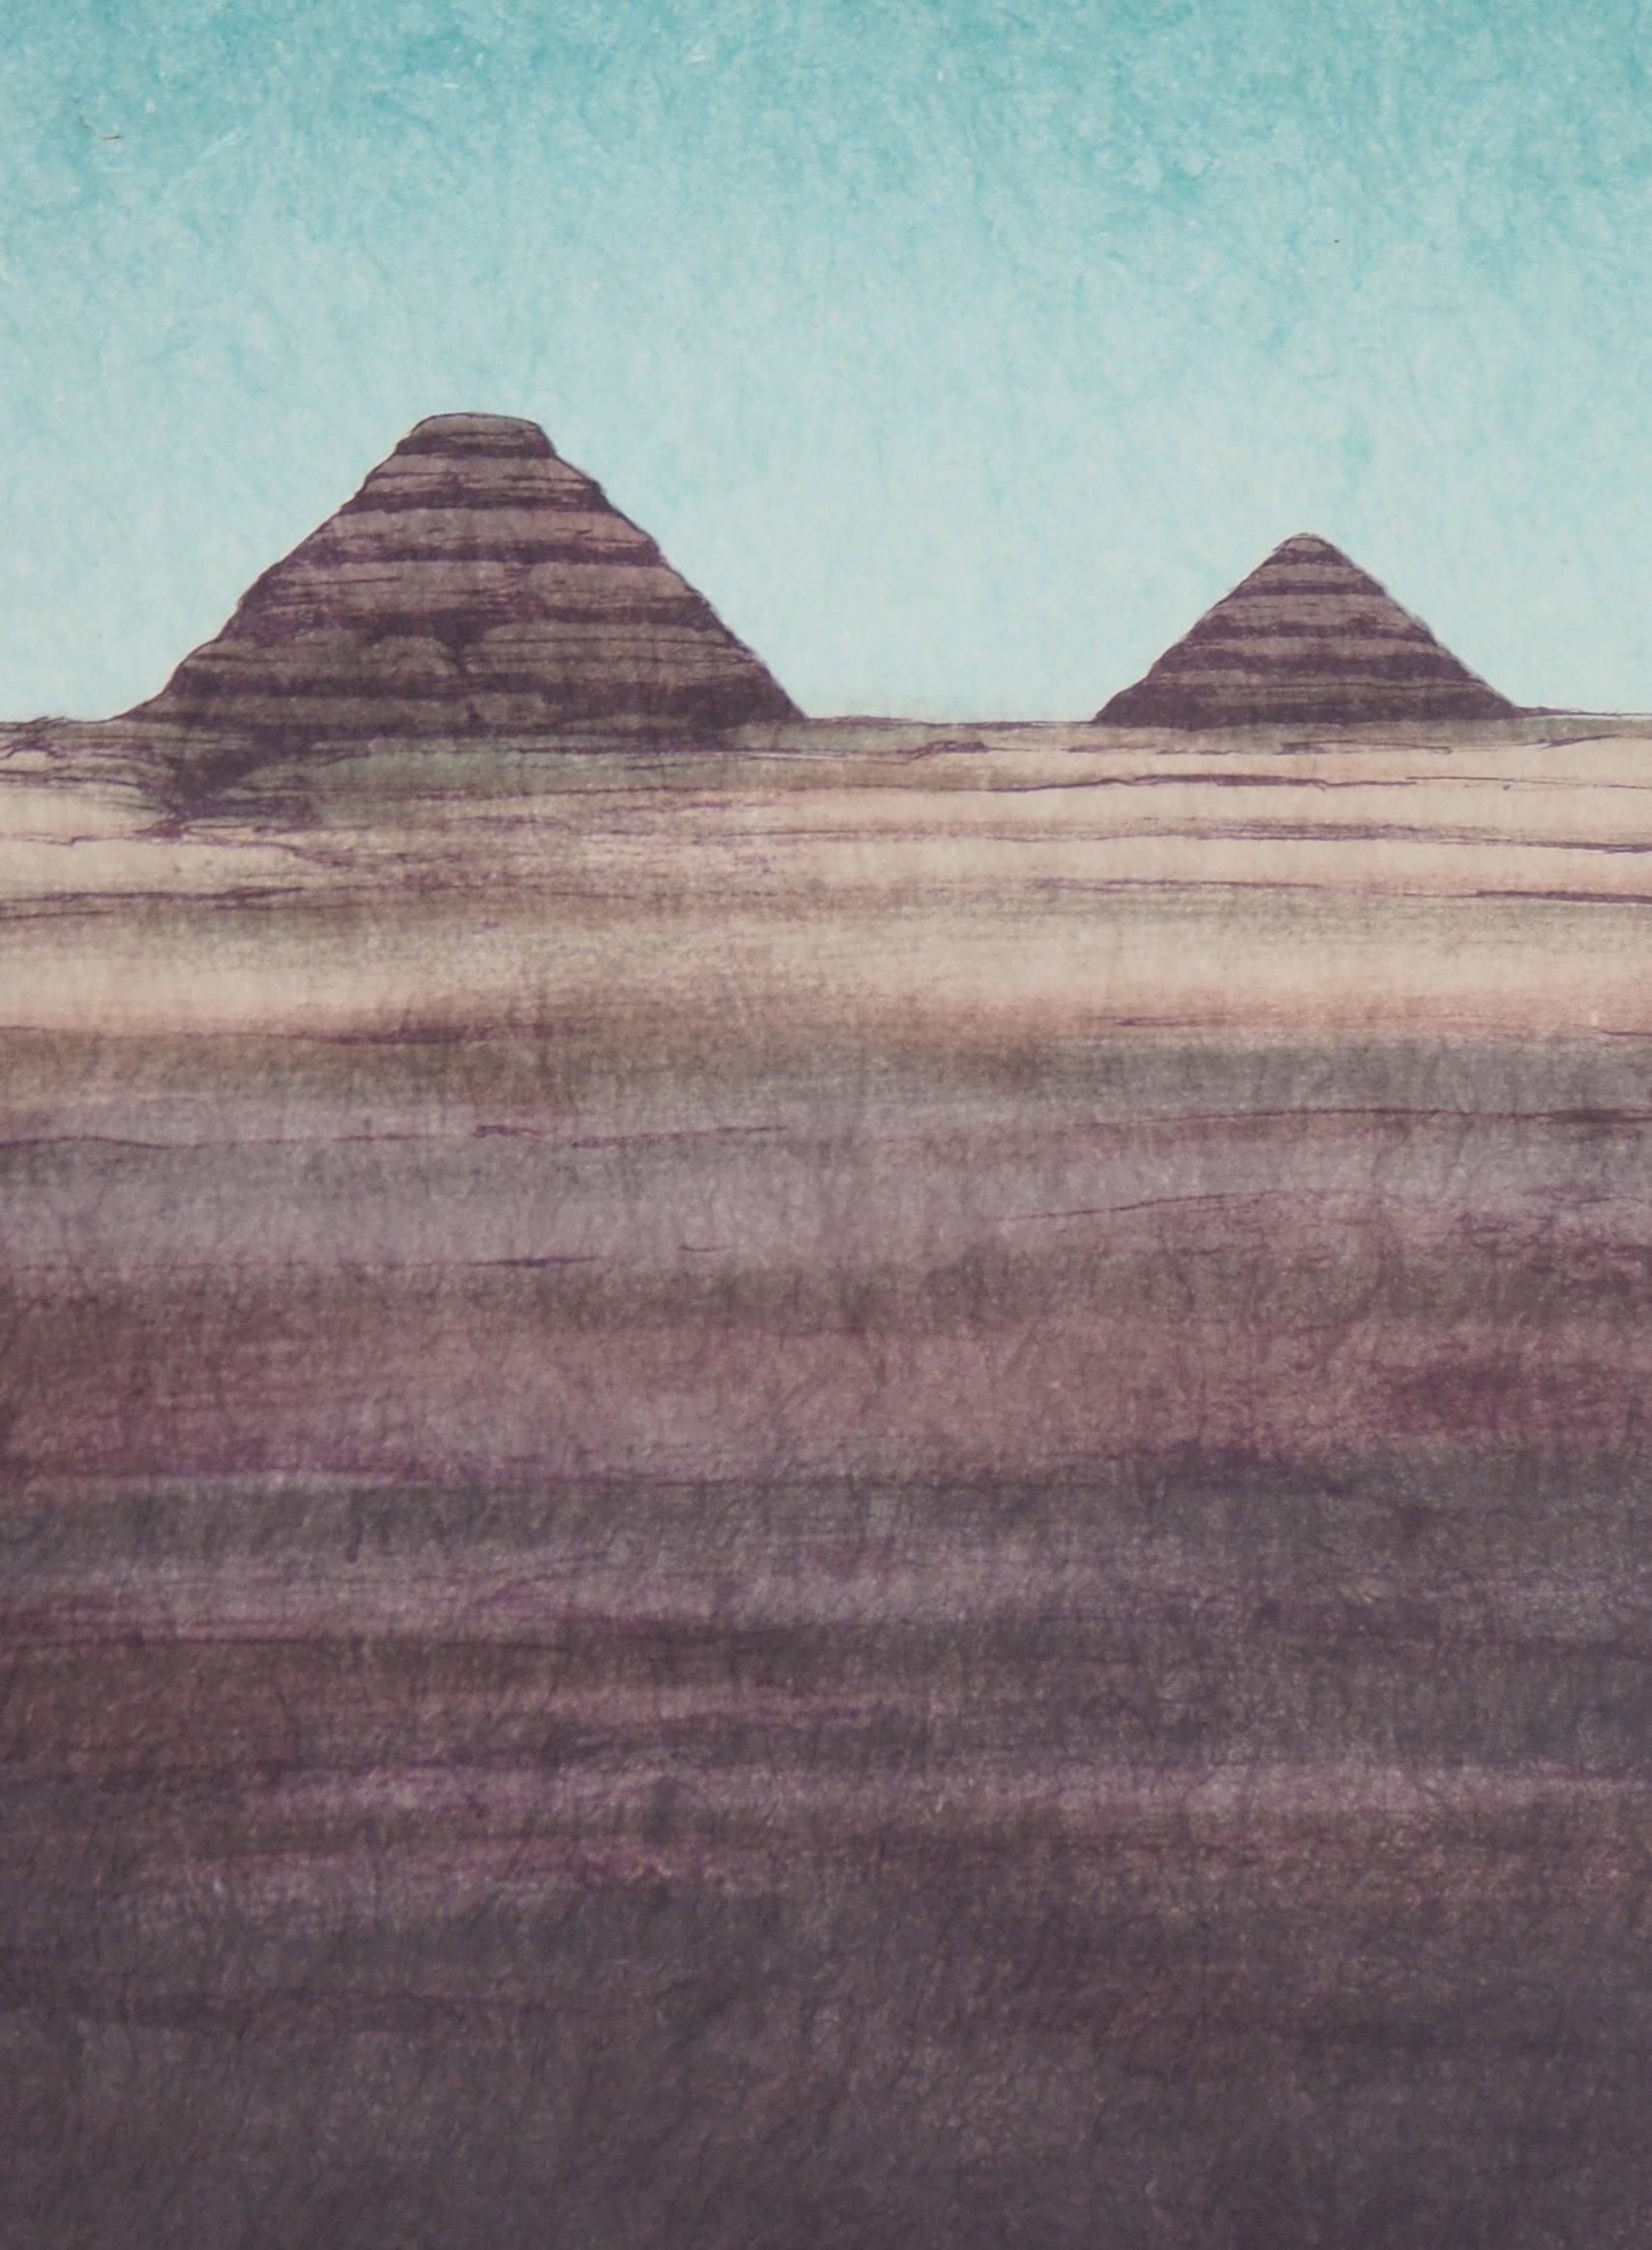 pyramids of giza original colour